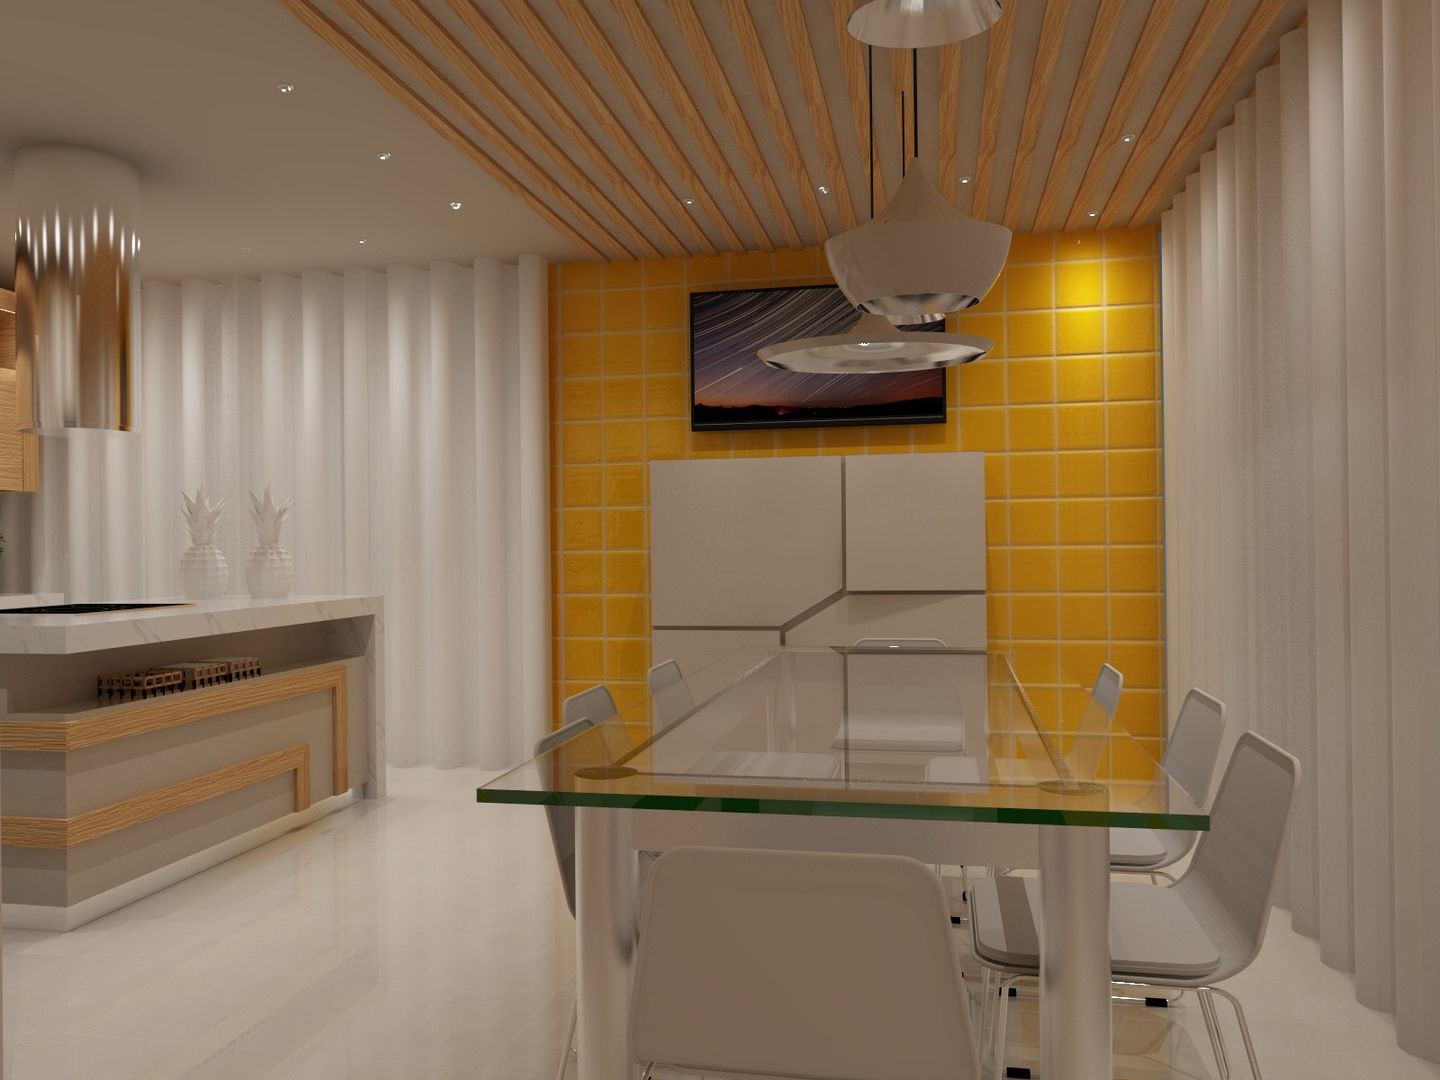 Projecto Cozinha - Vila Verde, Braga, Angelourenzzo - Interior Design Angelourenzzo - Interior Design Muebles de cocinas